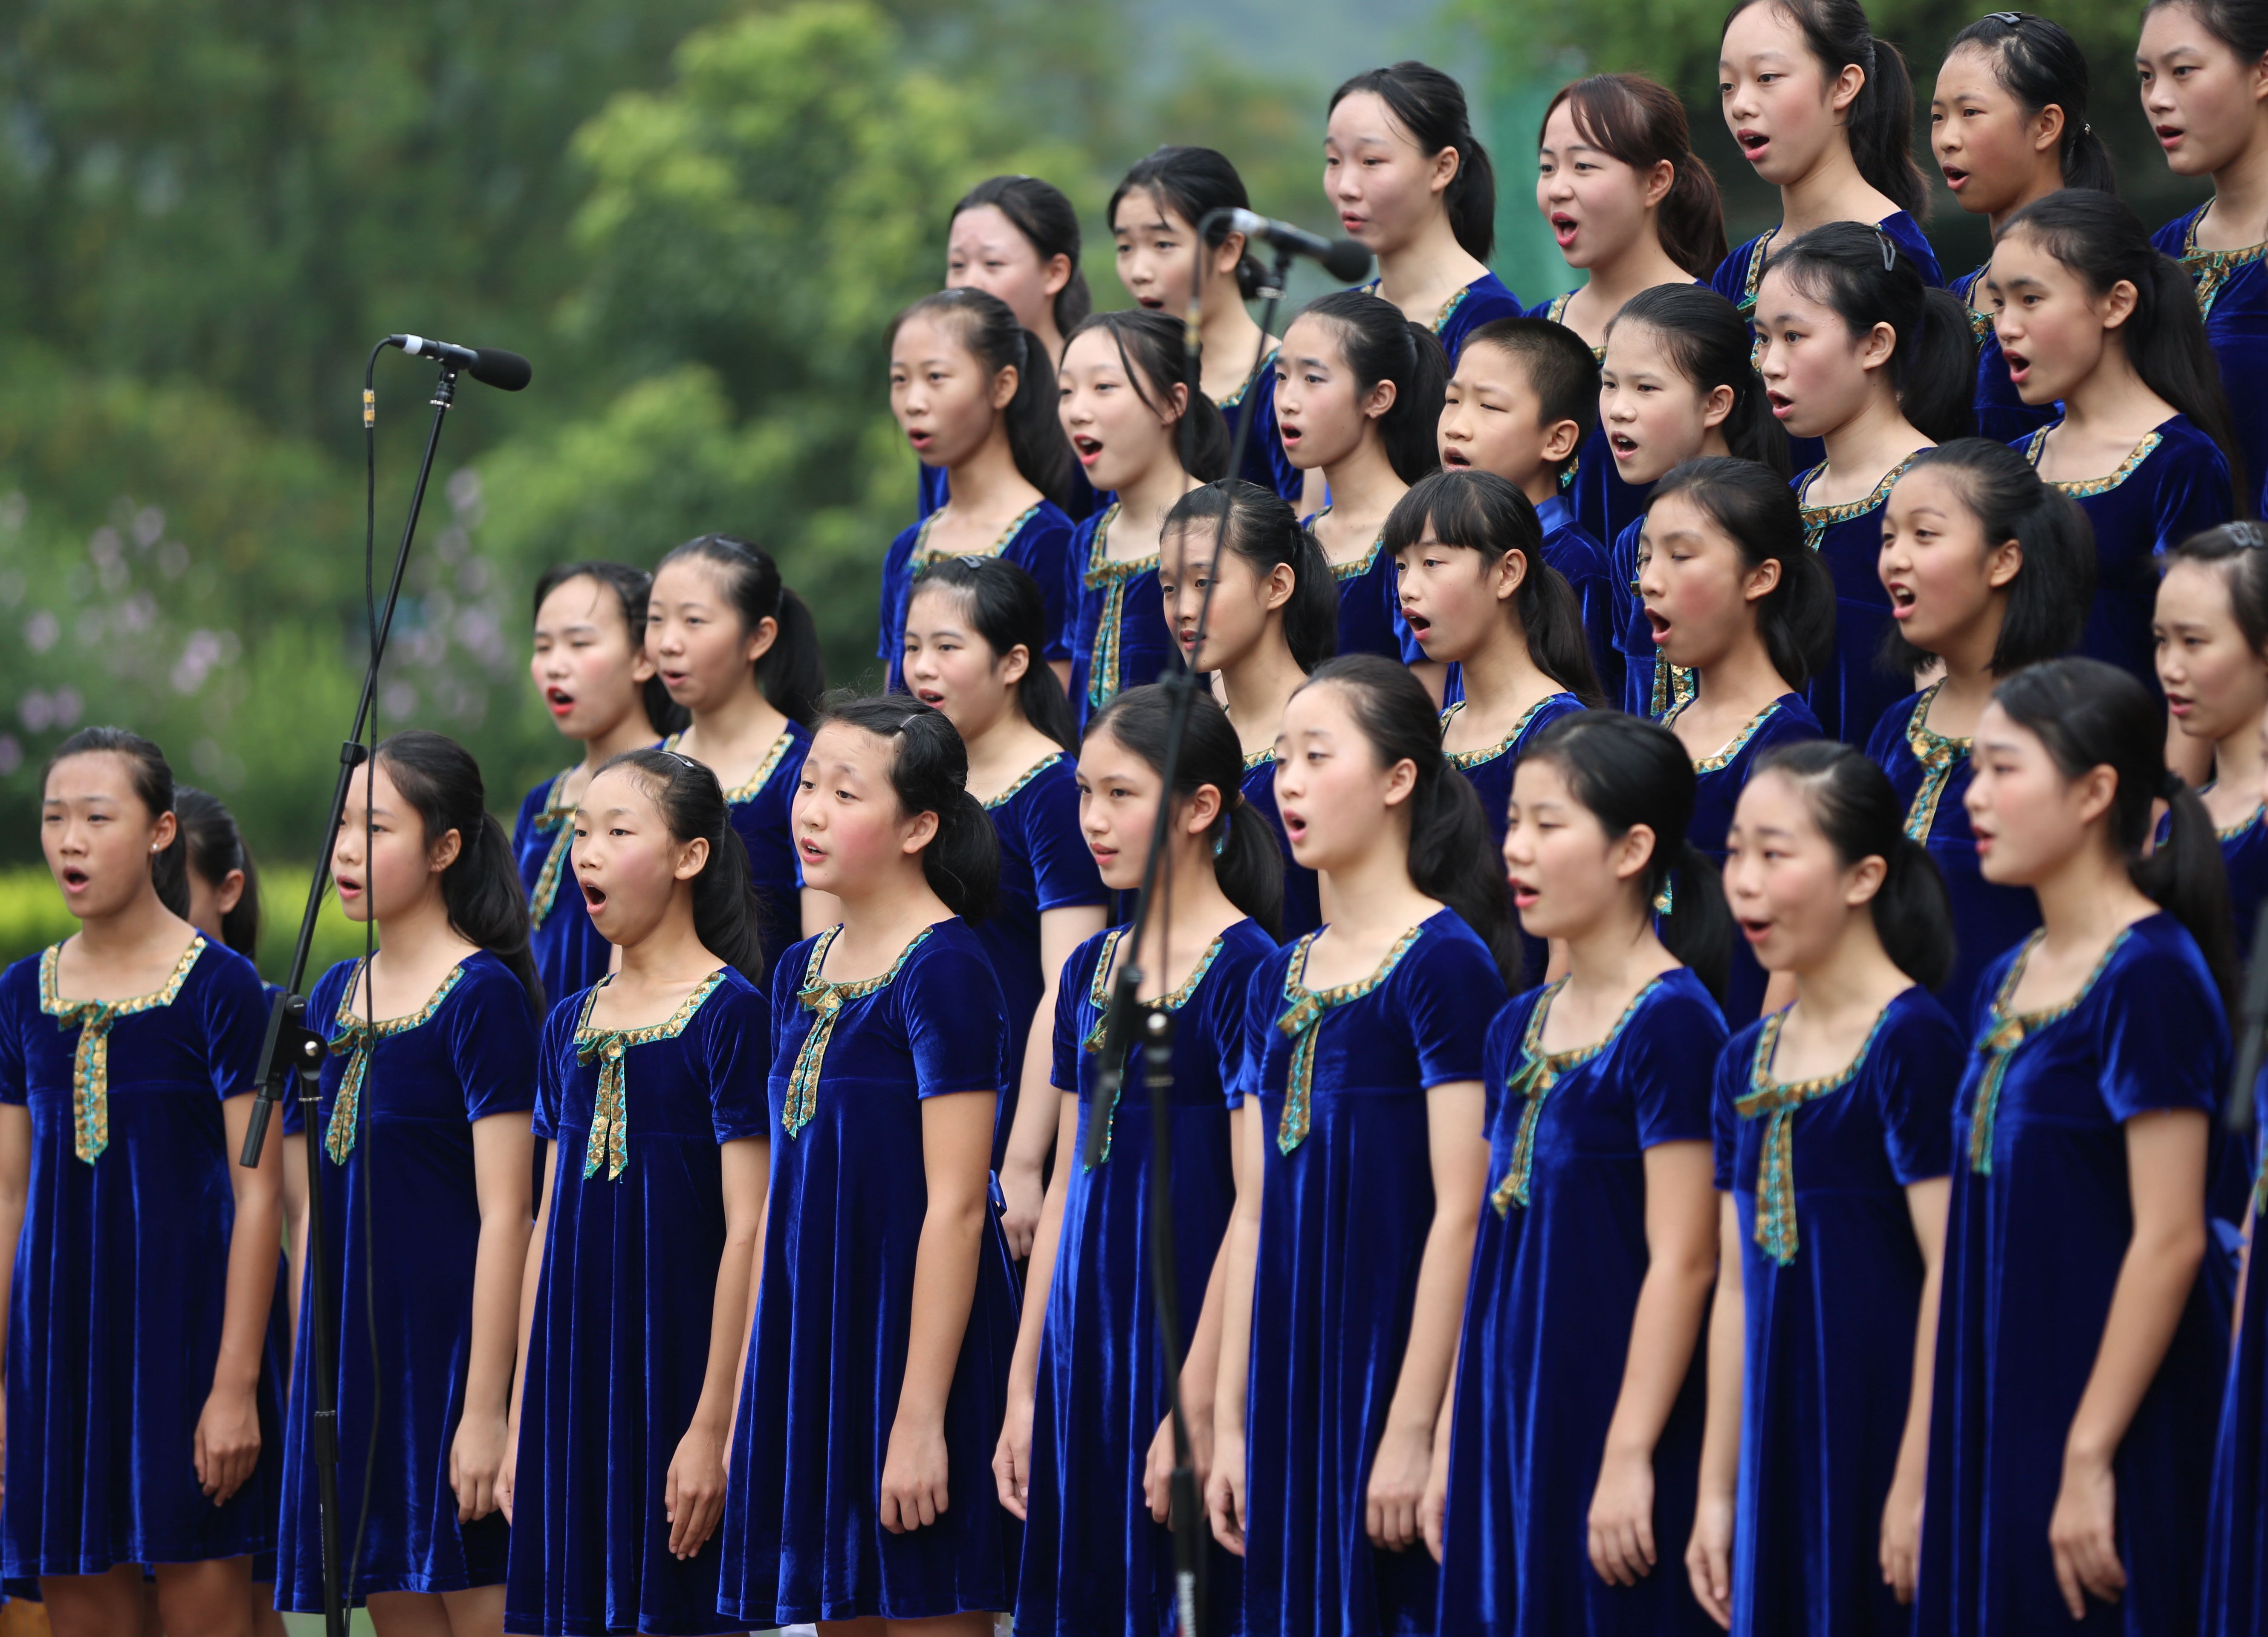 8月21日,广州小海燕合唱团在张家界黄龙洞景区哈利路亚音乐厅的屋顶